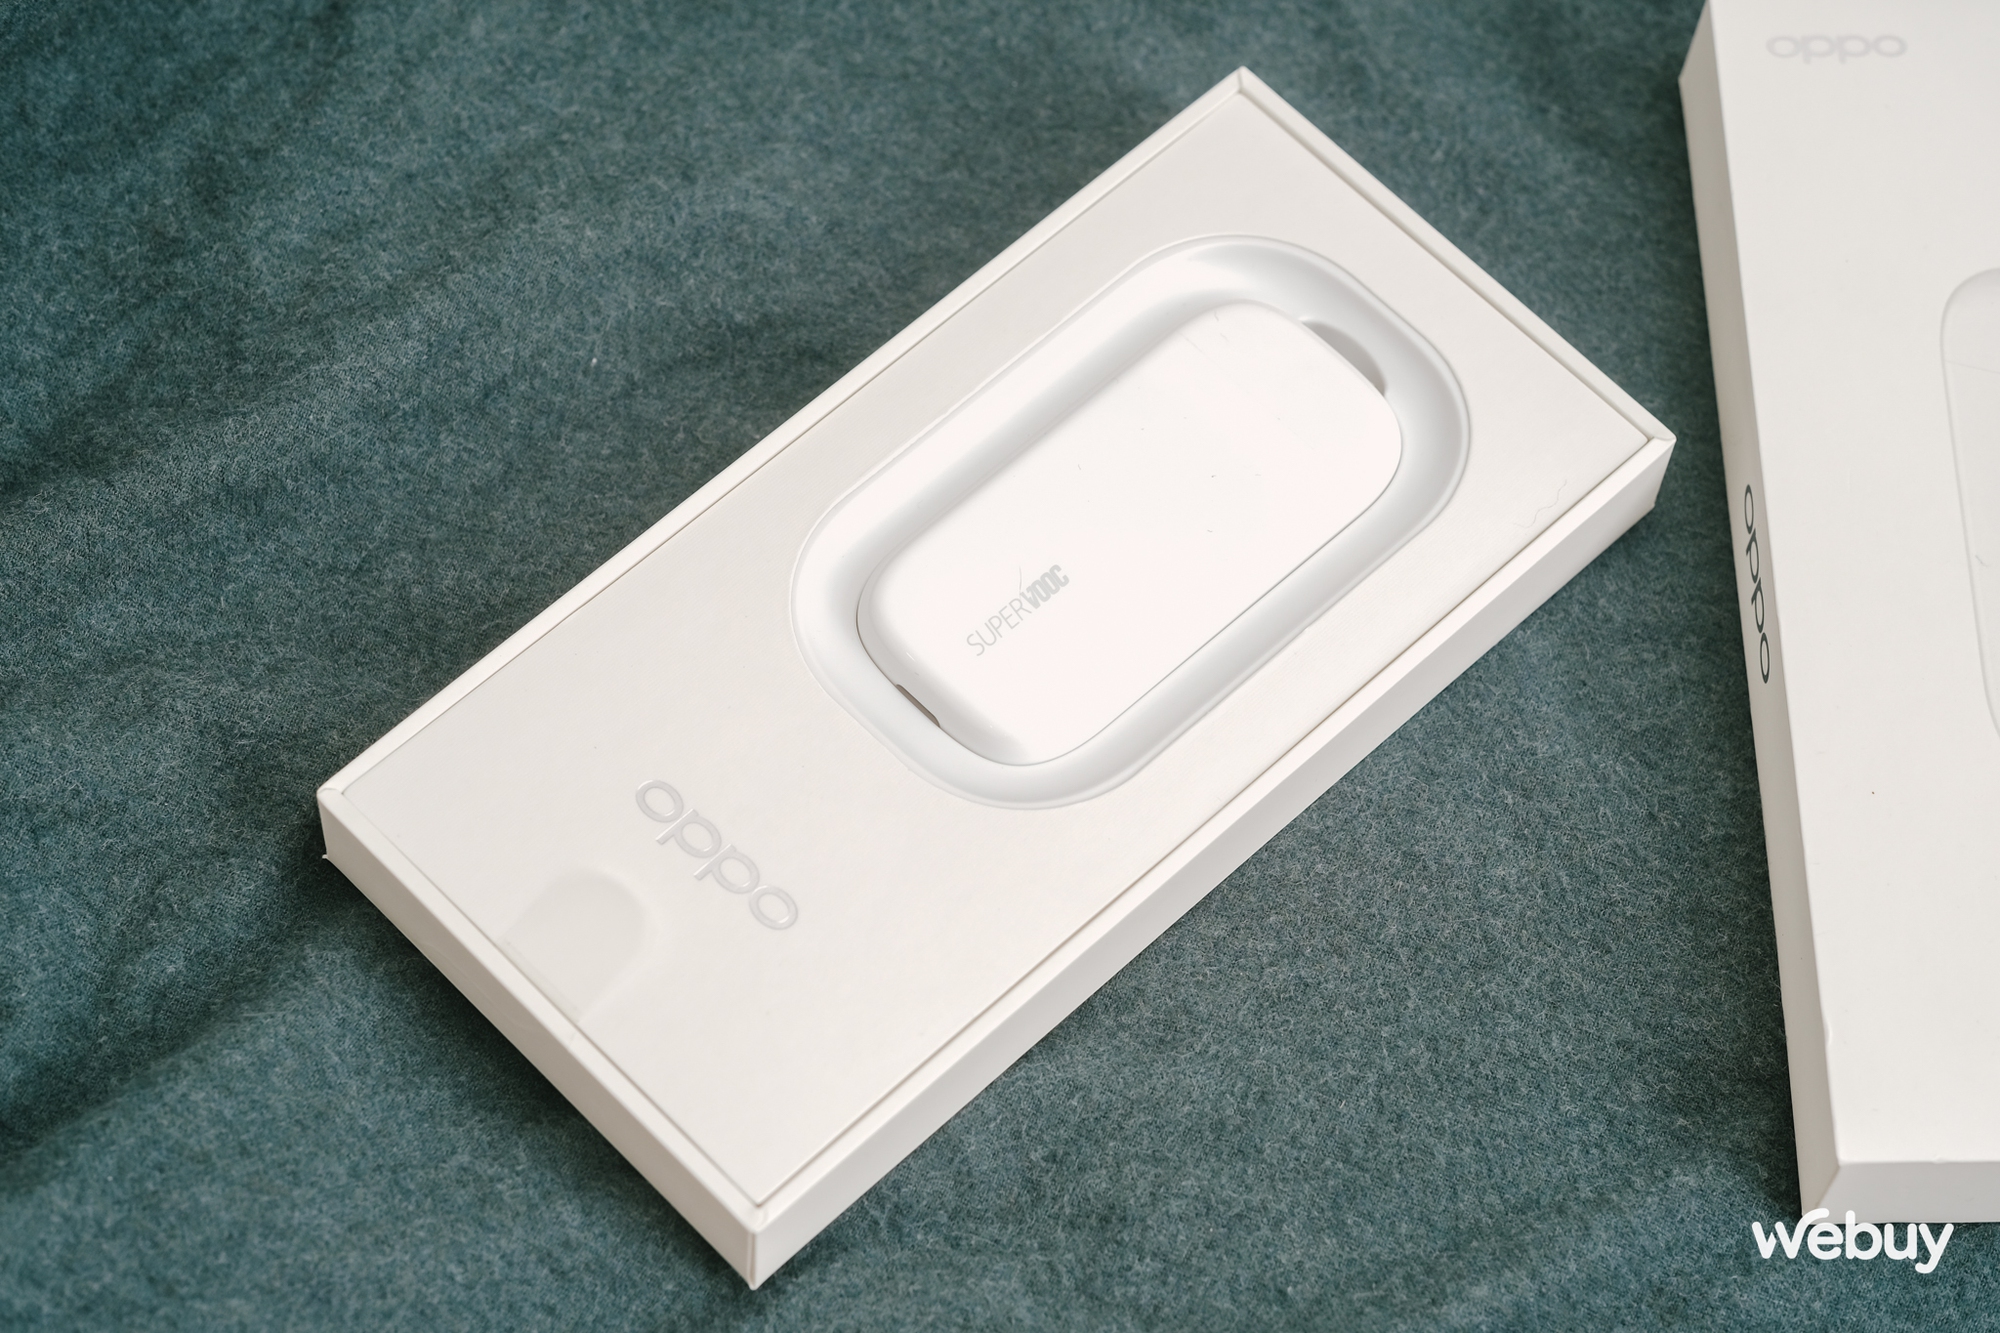 OPPO có củ sạc nhanh 50W thiết kế siêu mỏng, sạc cho cả MacBook nhưng có tiền chưa chắc đã mua được - Ảnh 2.